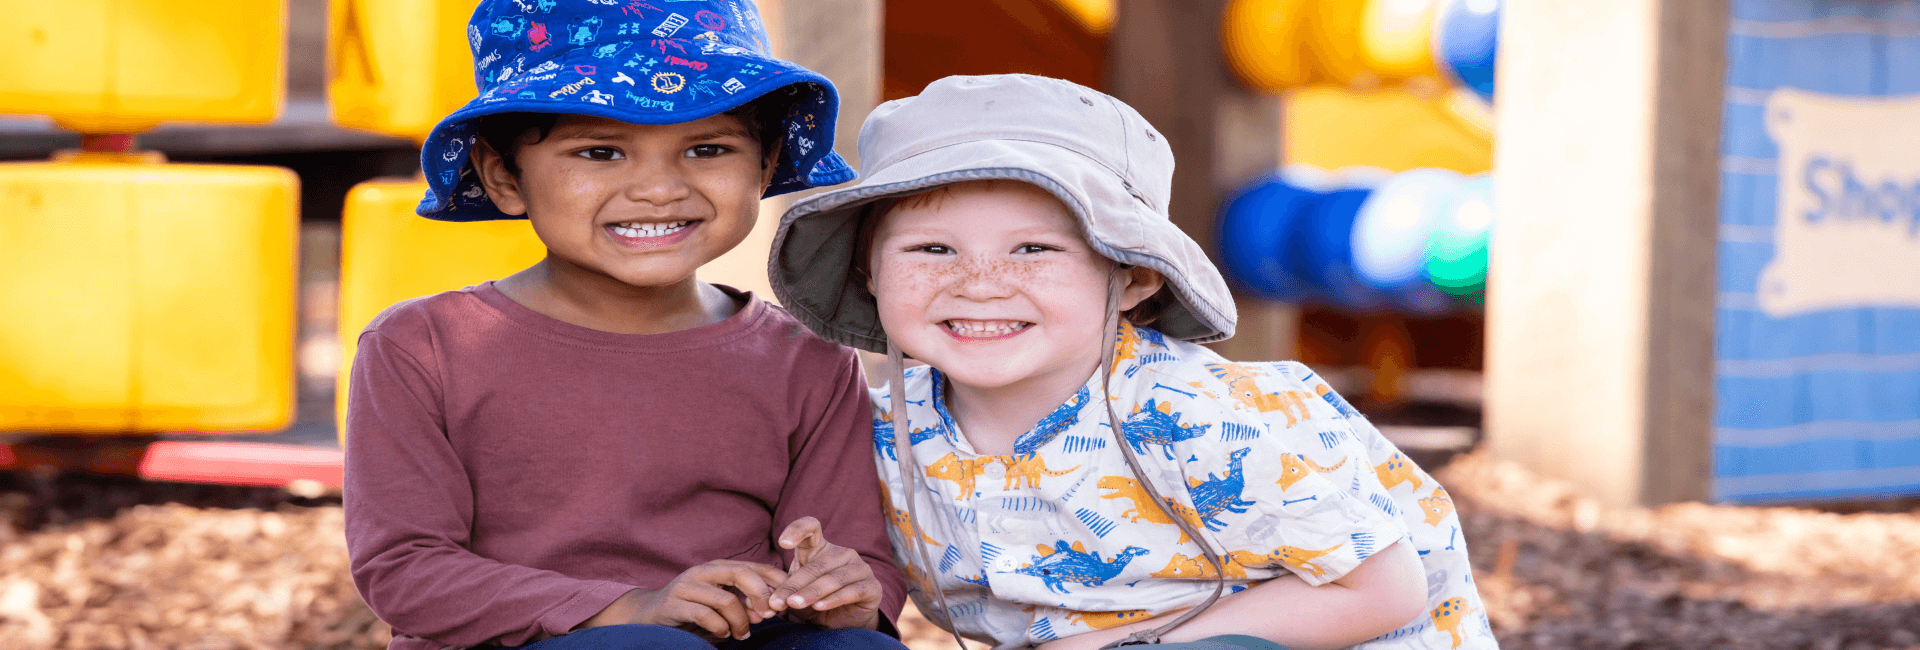 Child Care Rebate Montessori